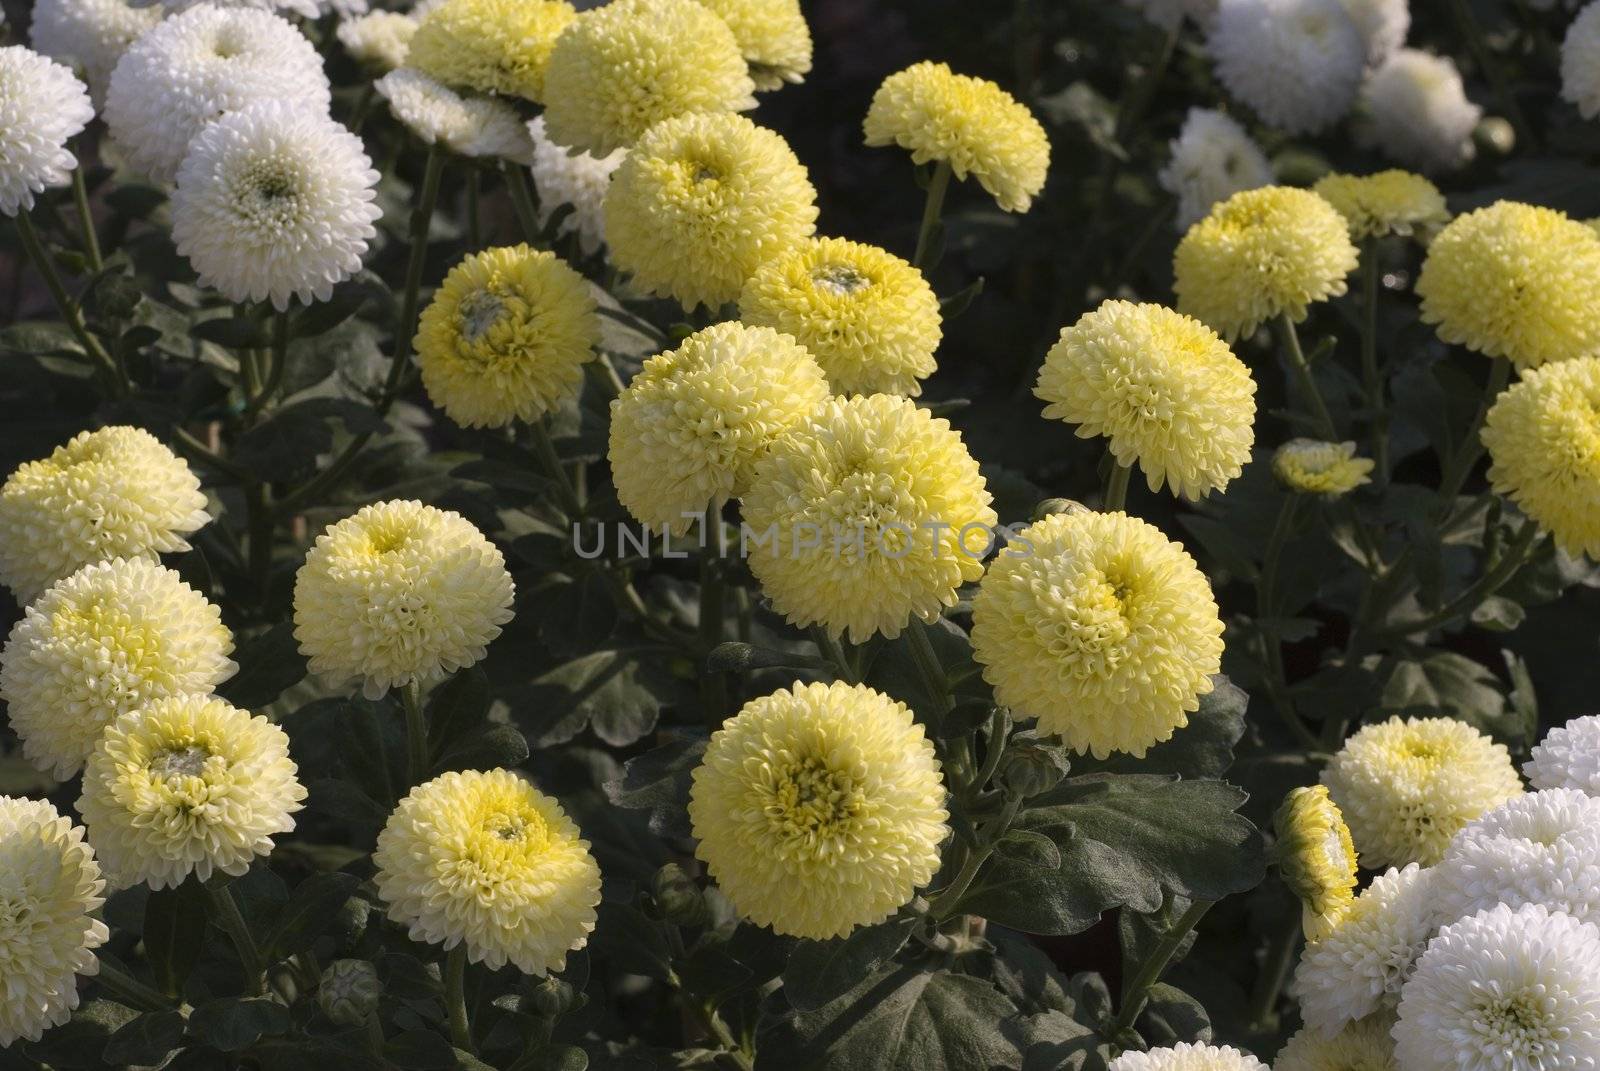 Yellow and White Chrysanthemum 2 by elwynn